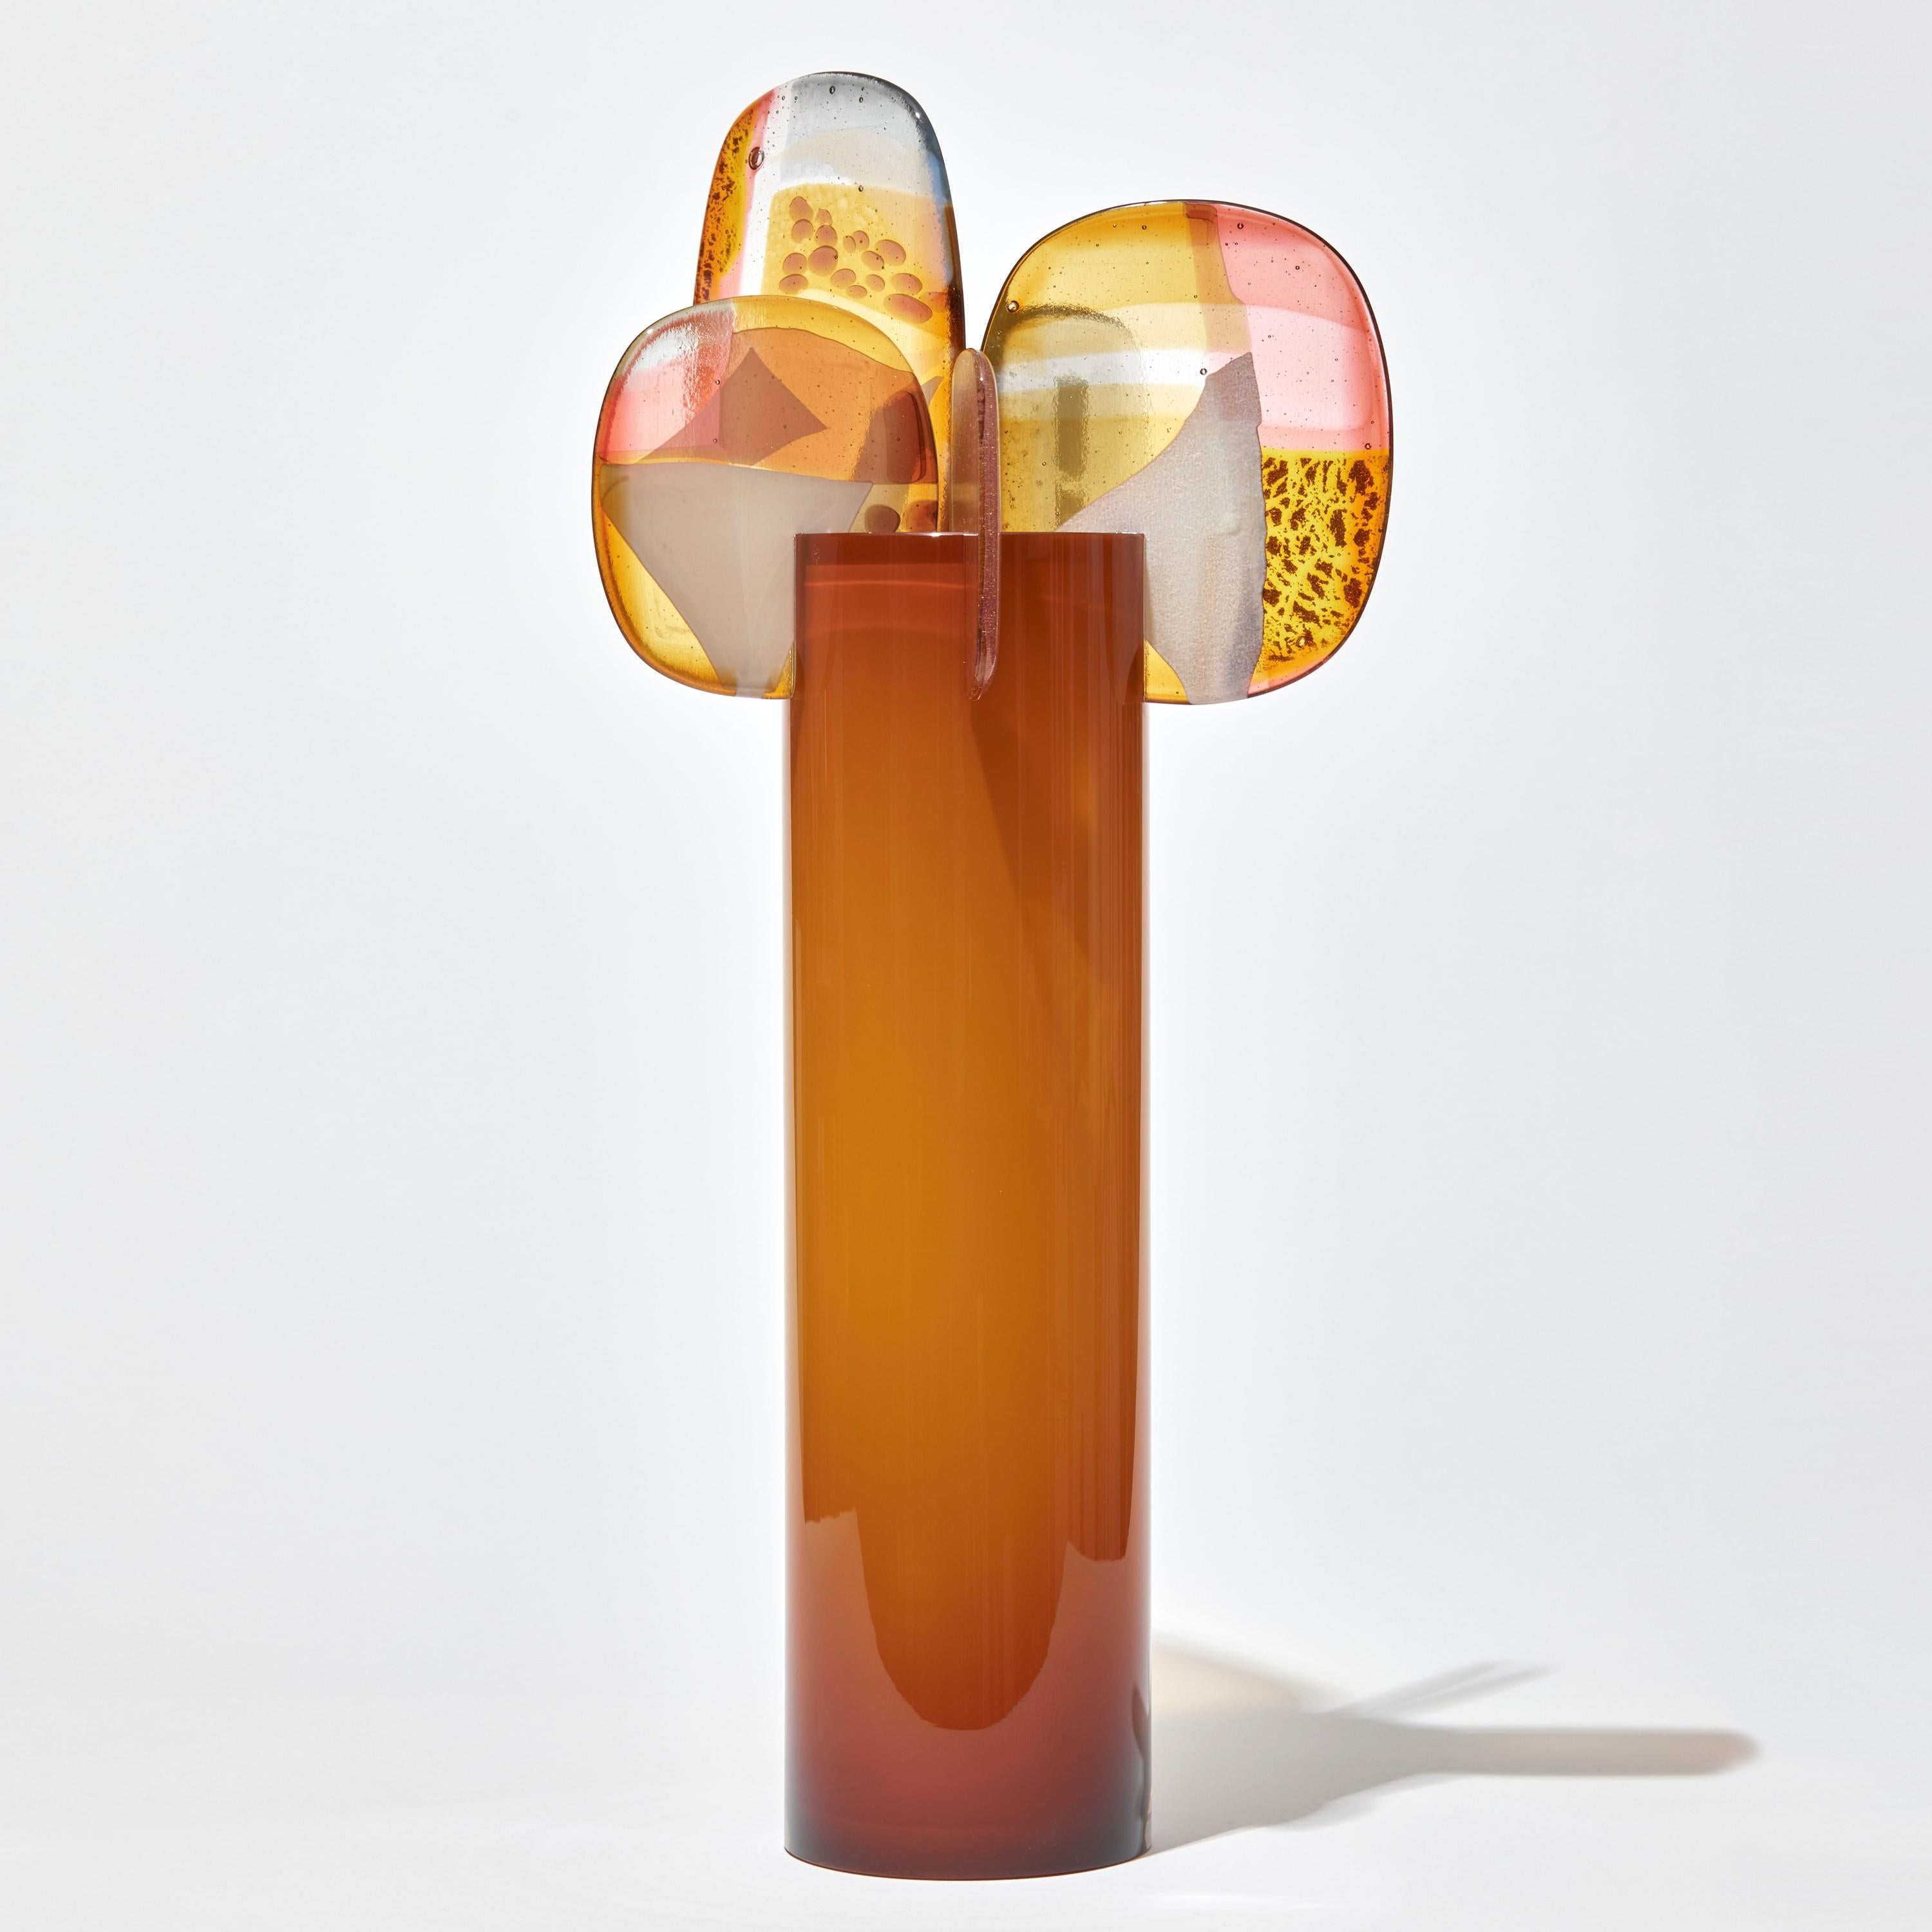 Paradise 04 in Bernstein, eine orangefarbene, goldene- und rosafarbene Glasskulptur von Amy Cushing (Organische Moderne)